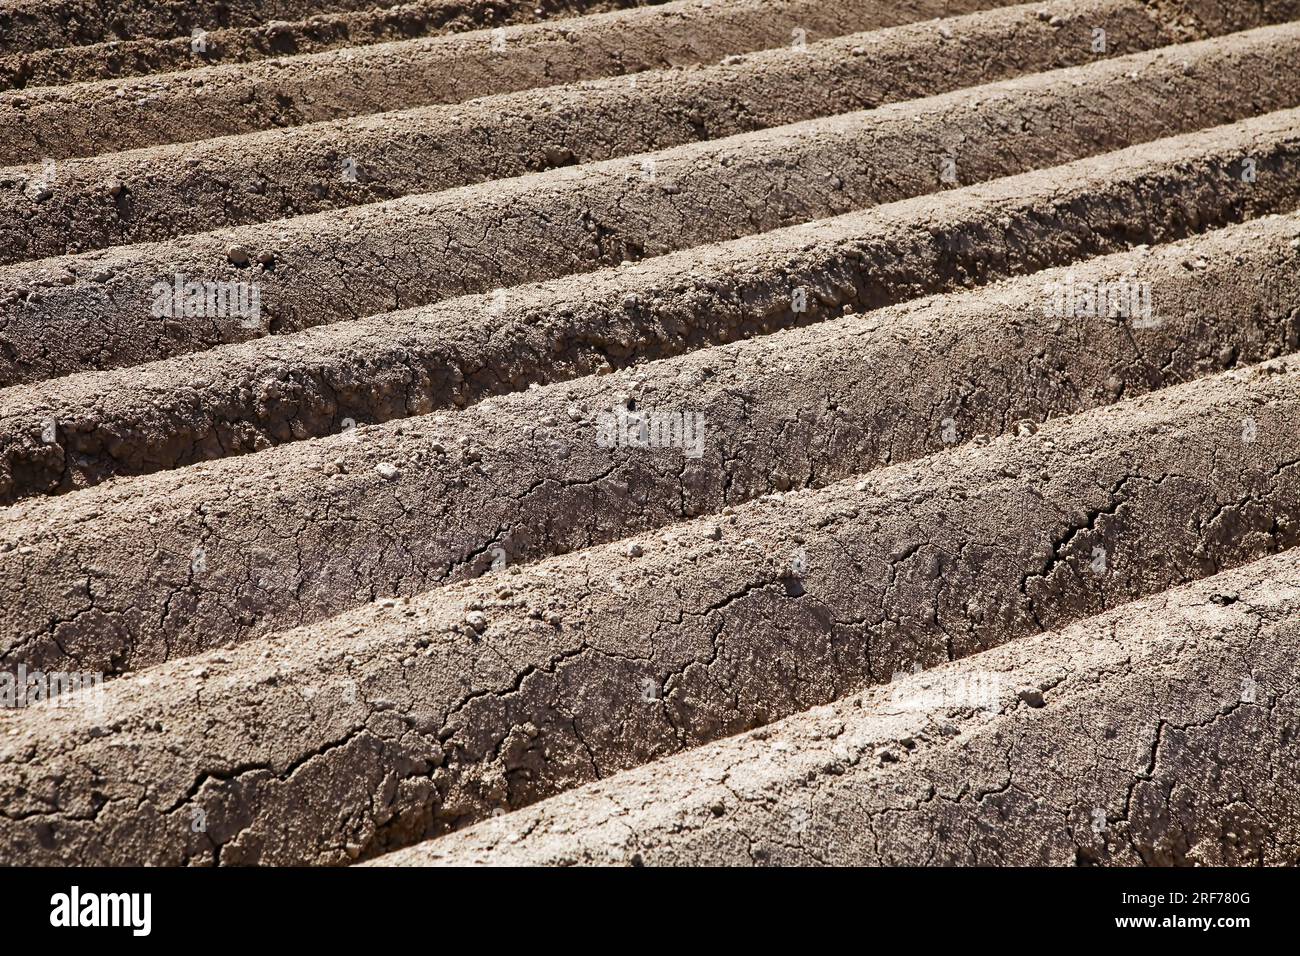 Ein frisch gepflügtes Feld in der Landwirtschaft, Spargelanbau, Gemüseanbau, Stock Photo